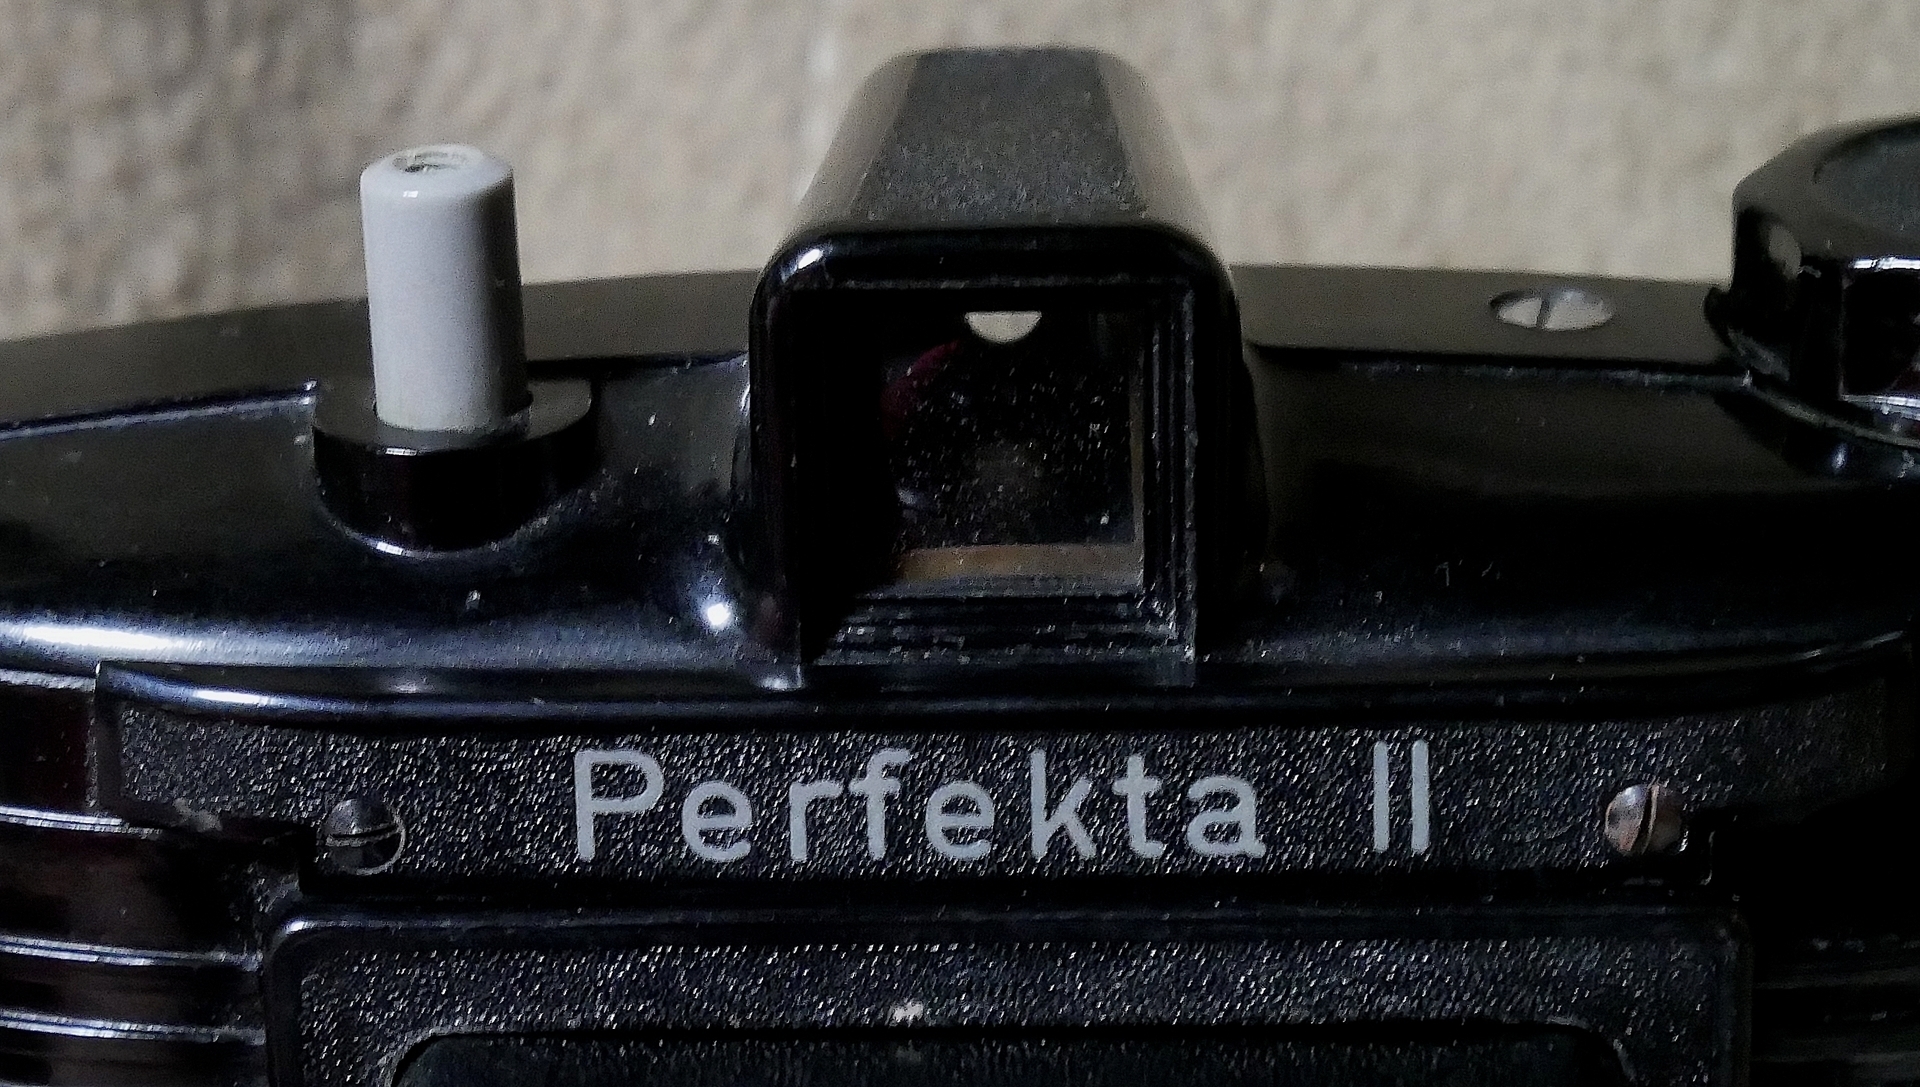 Perfekta ドイツ製カメラ ラインメタル ペルフェクタ - www